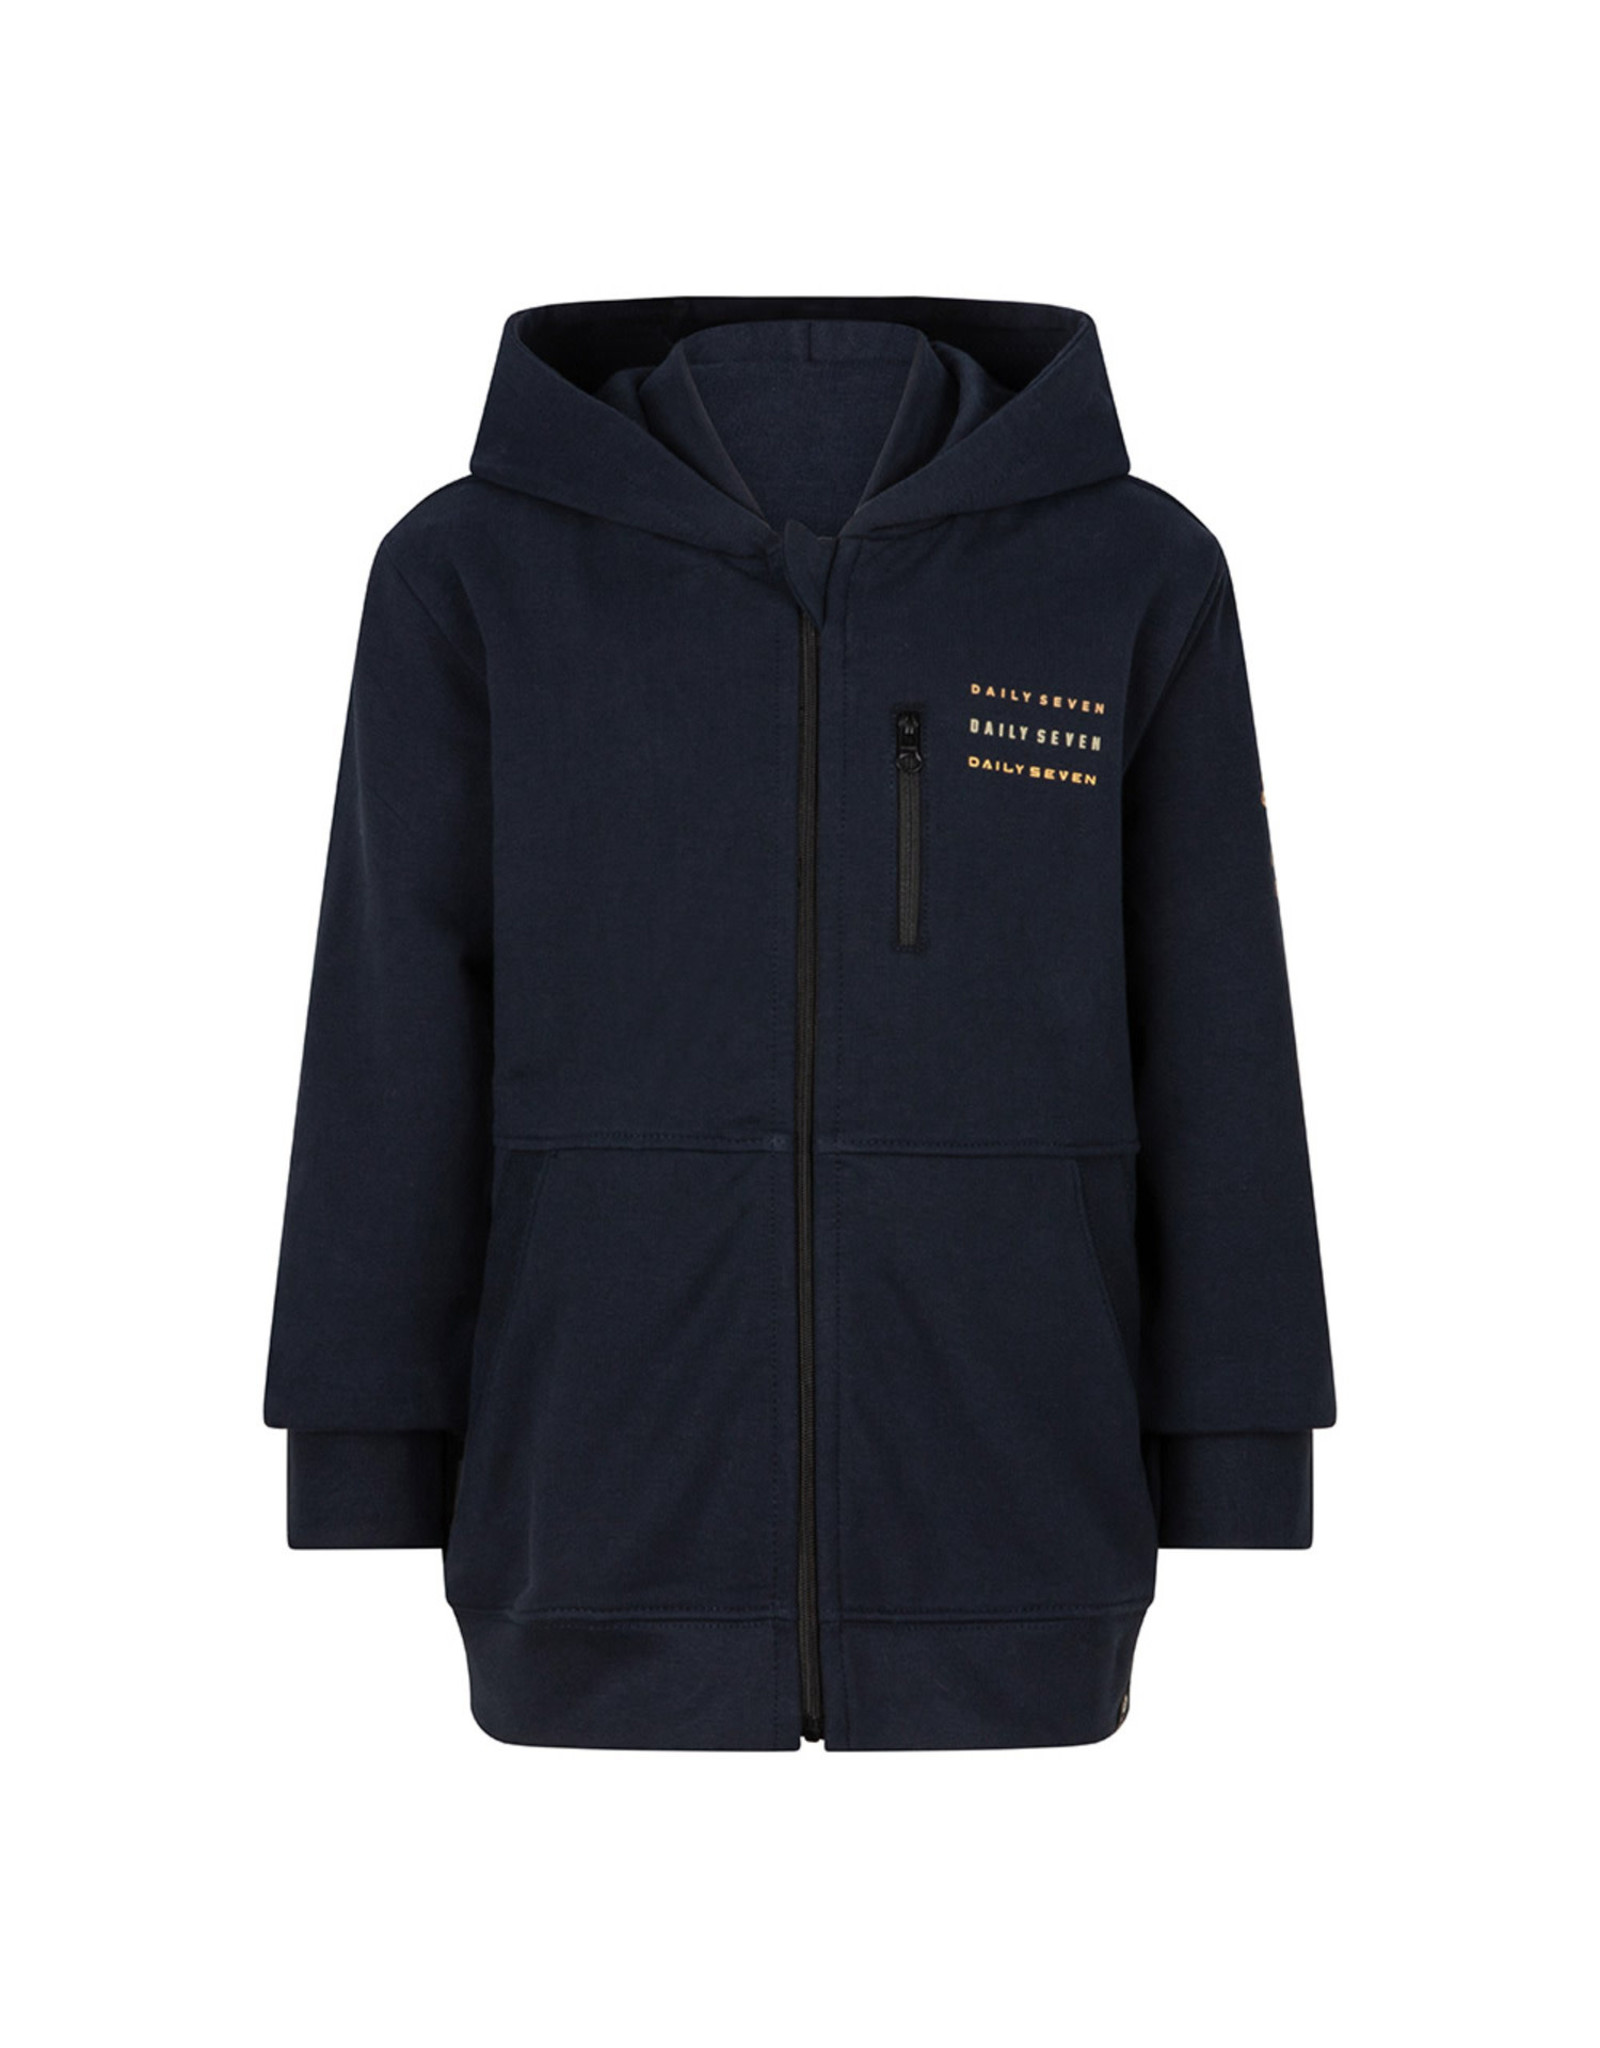 DAILY7 Hooded zipper jacket - Midnight navy